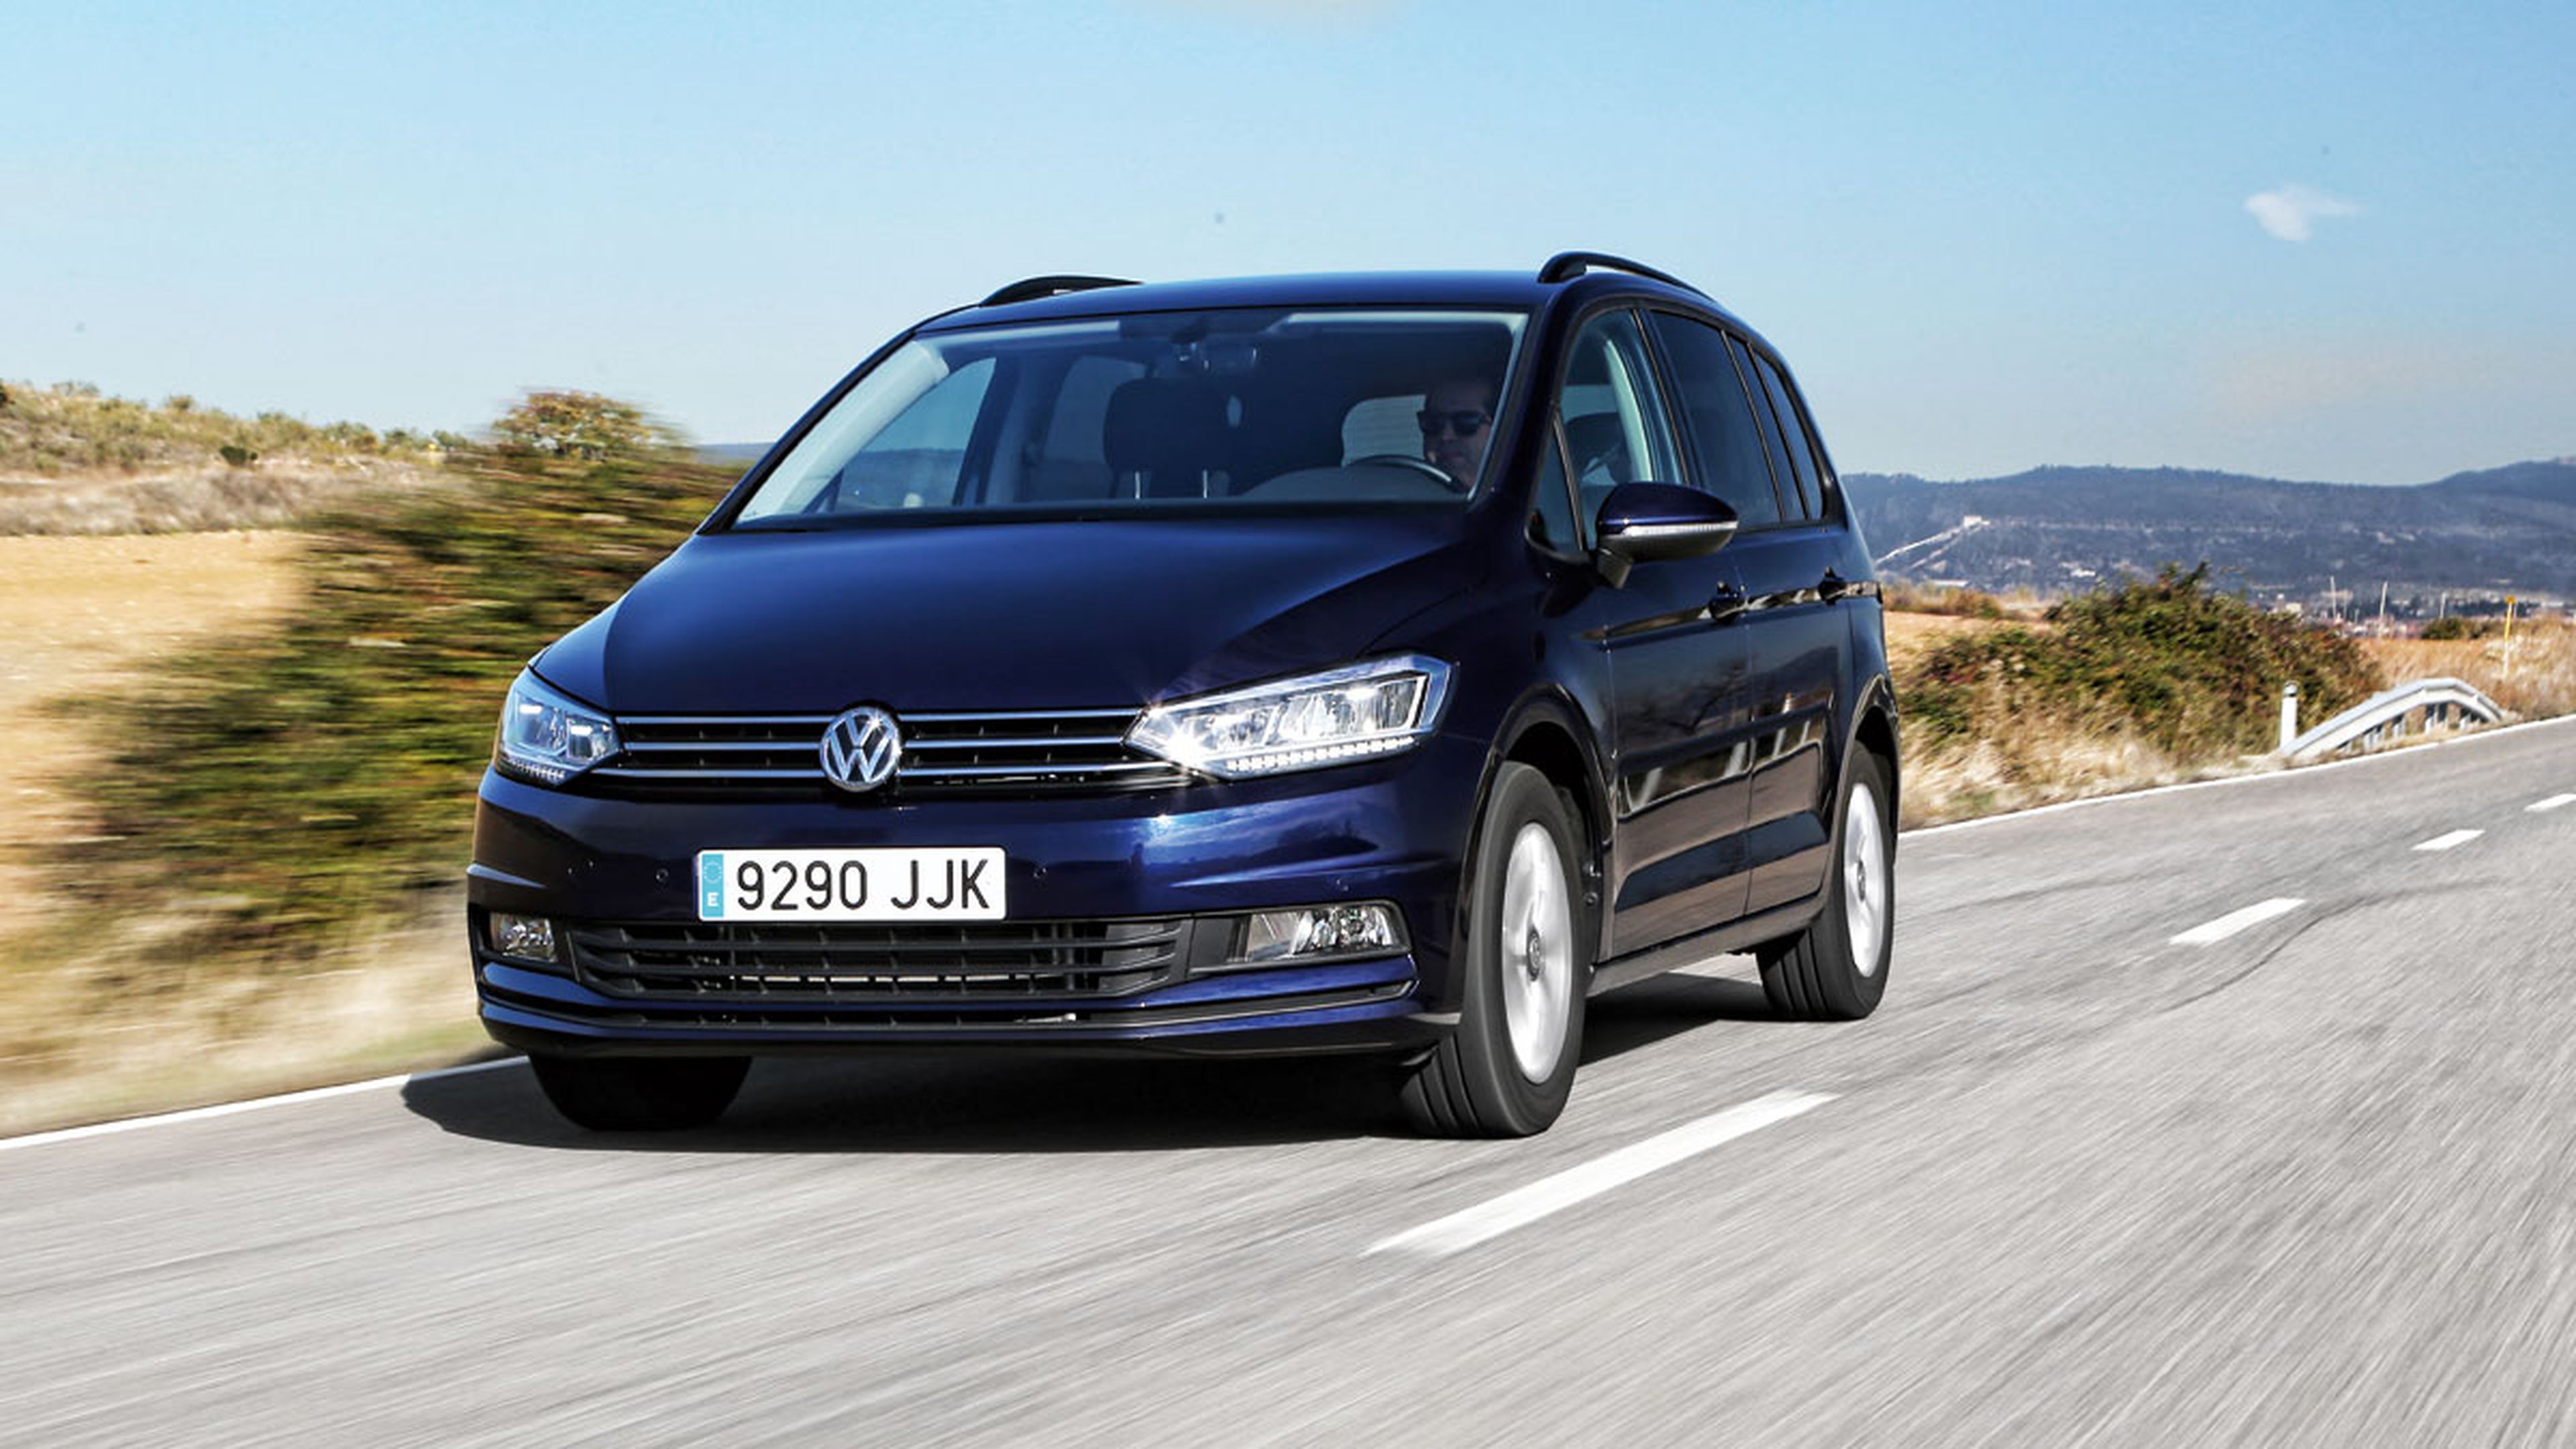 Volkswagen Touran, ¿cuál es el más barato?